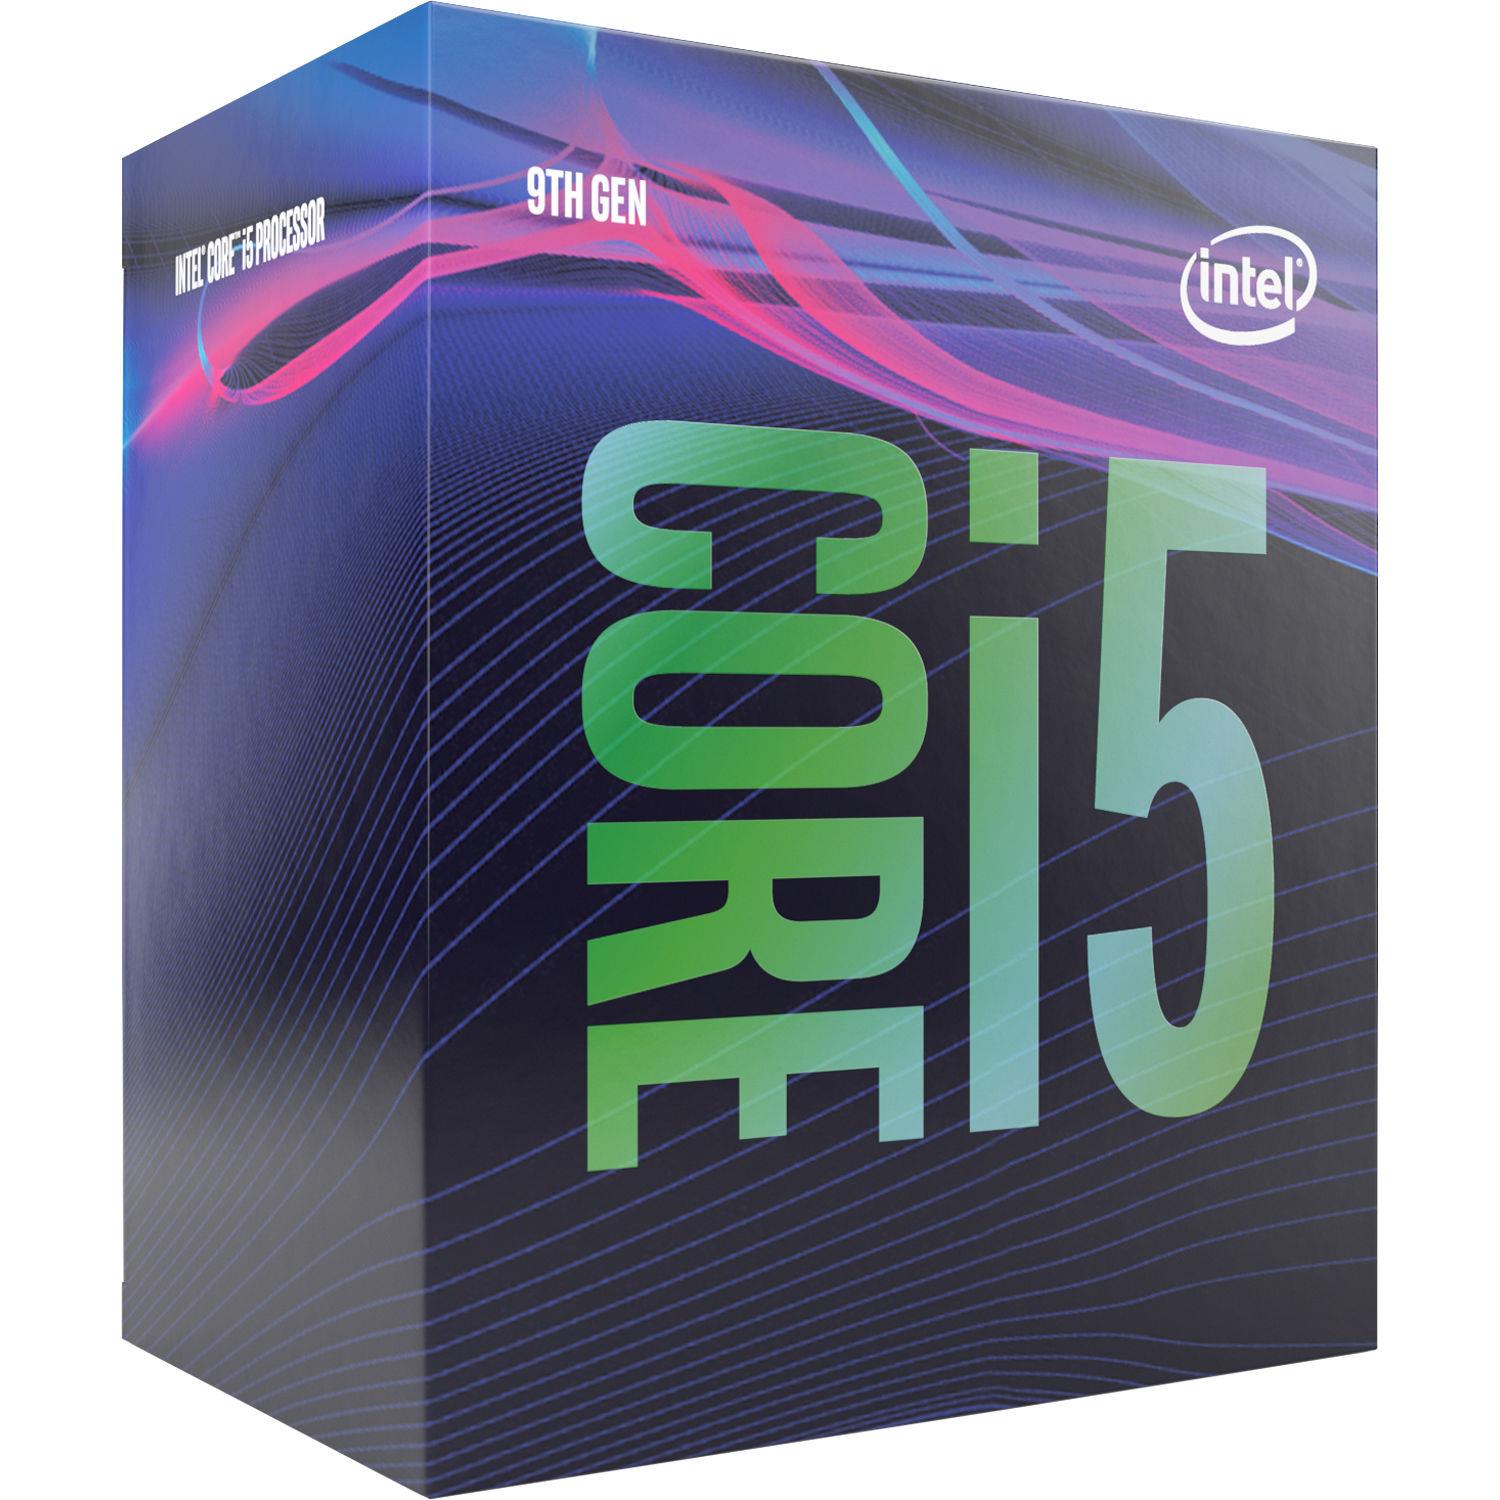 Центральний процесор Intel Core i5-9400 6/6 2.9GHz 9M LGA1151 65W box